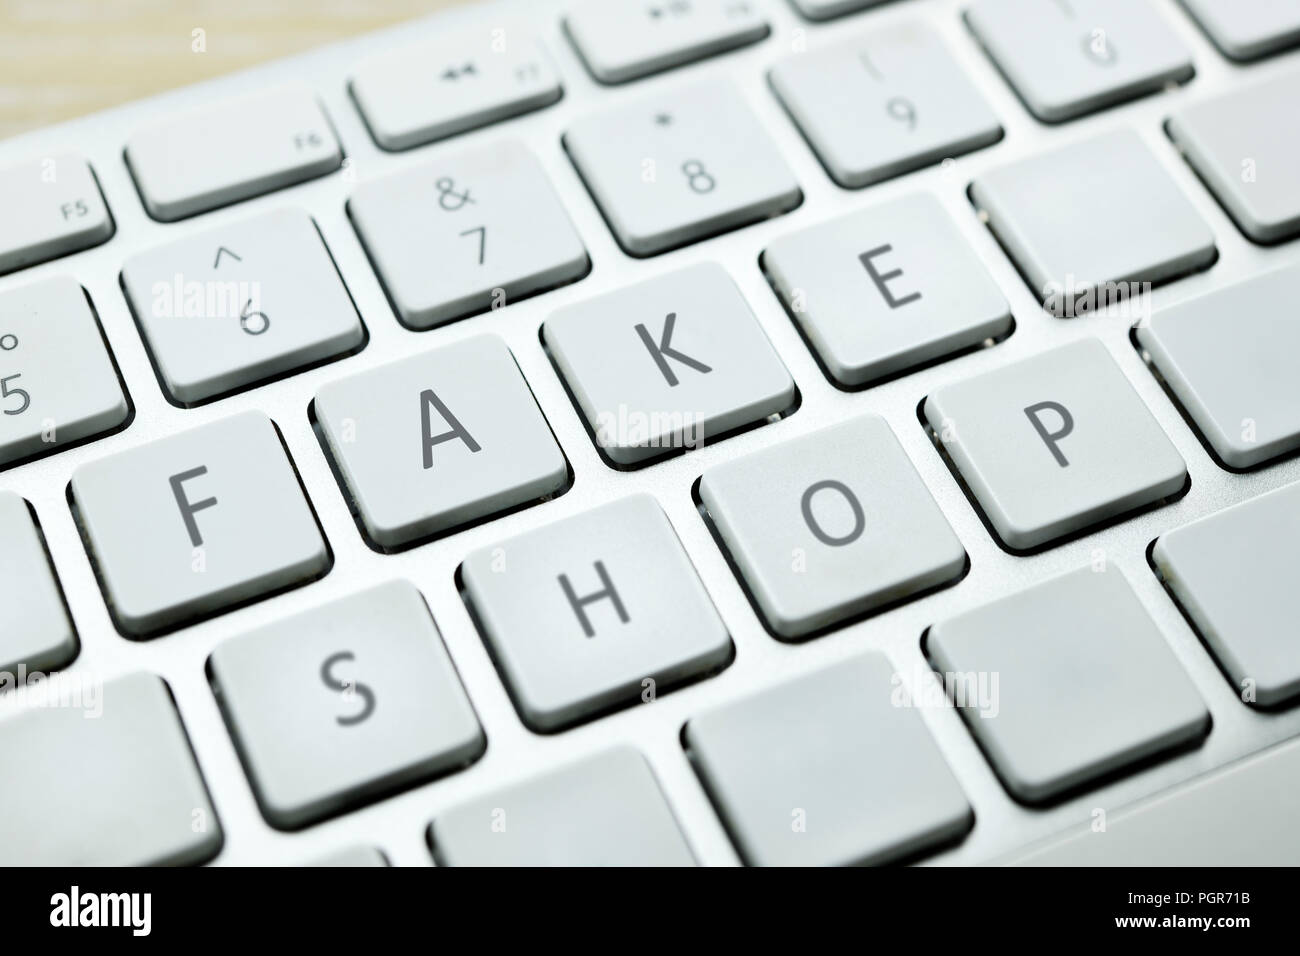 Fake shop computer keys Banque D'Images